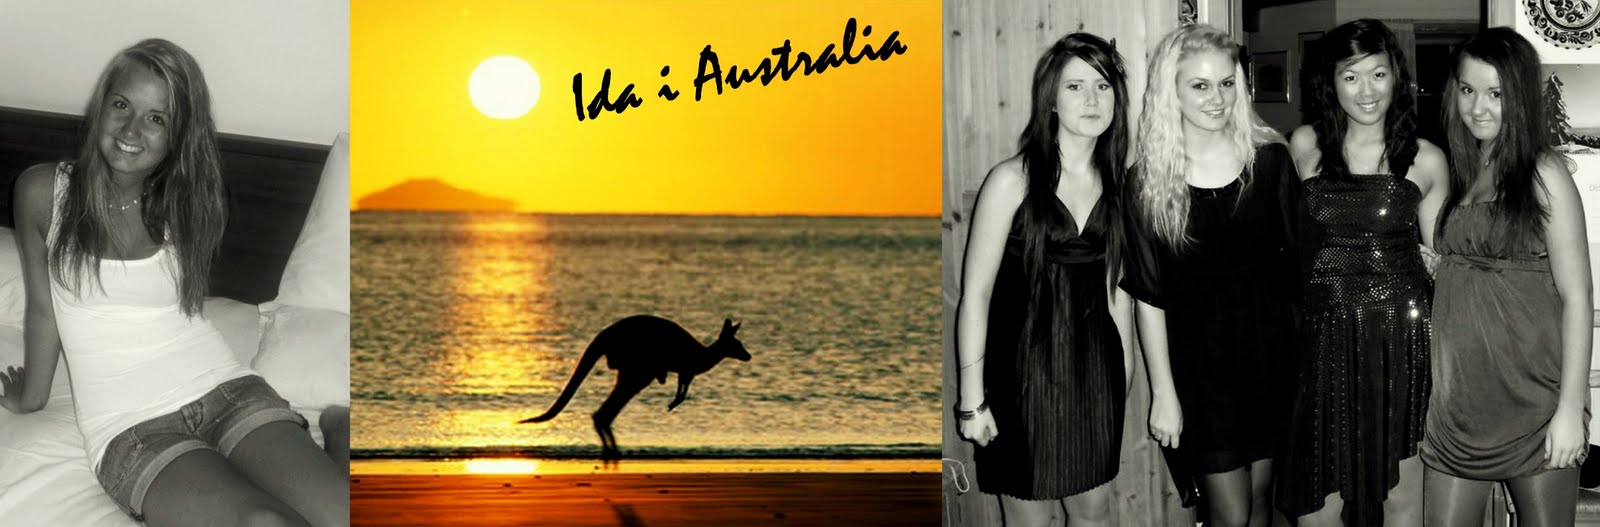 Ida i Australia